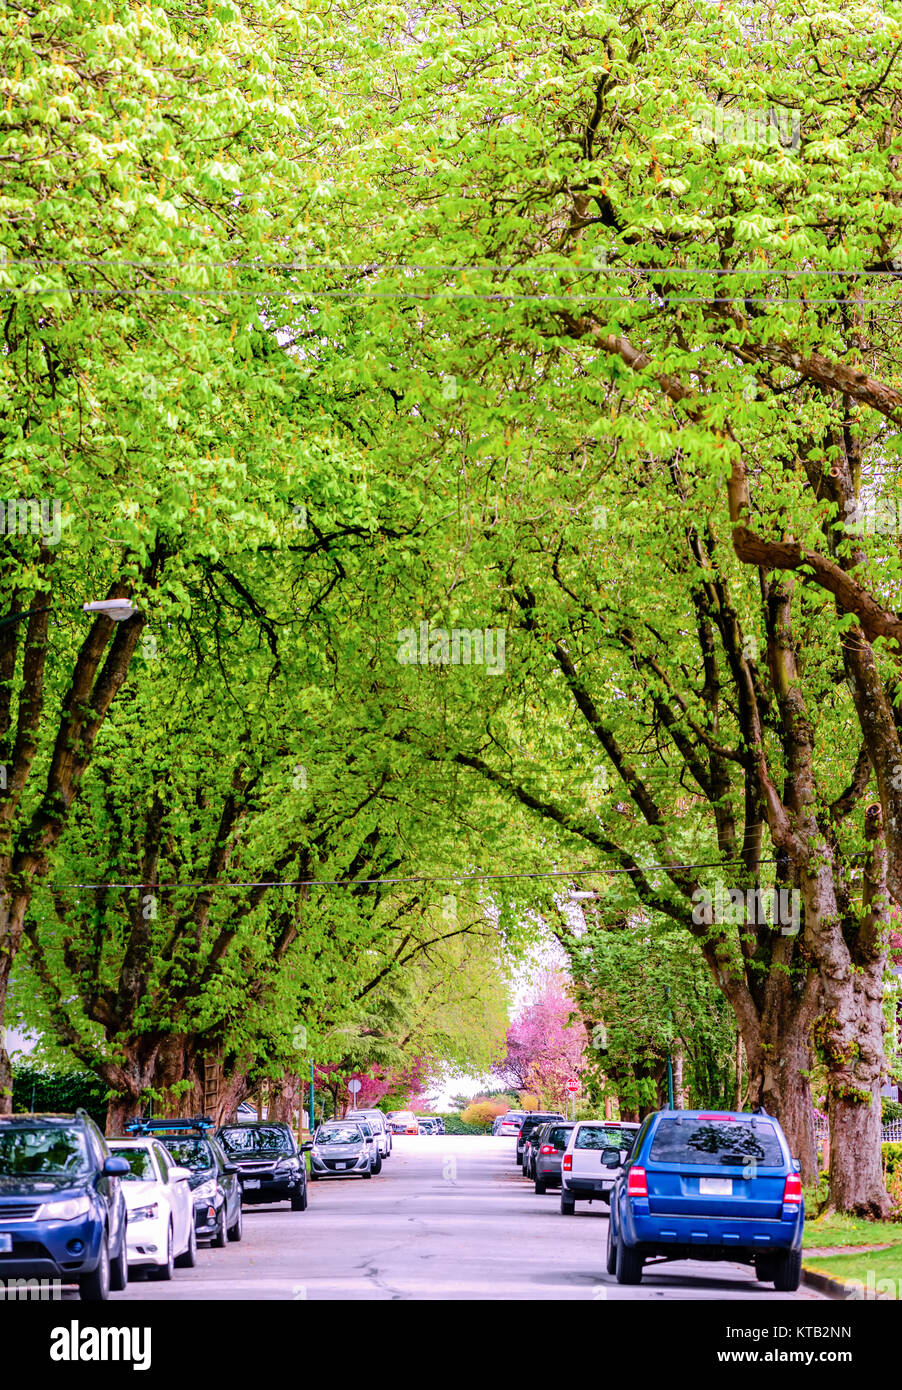 La strada di città ricoperta con enormi alberi verdi e le auto parcheggiate e le banchine Foto Stock